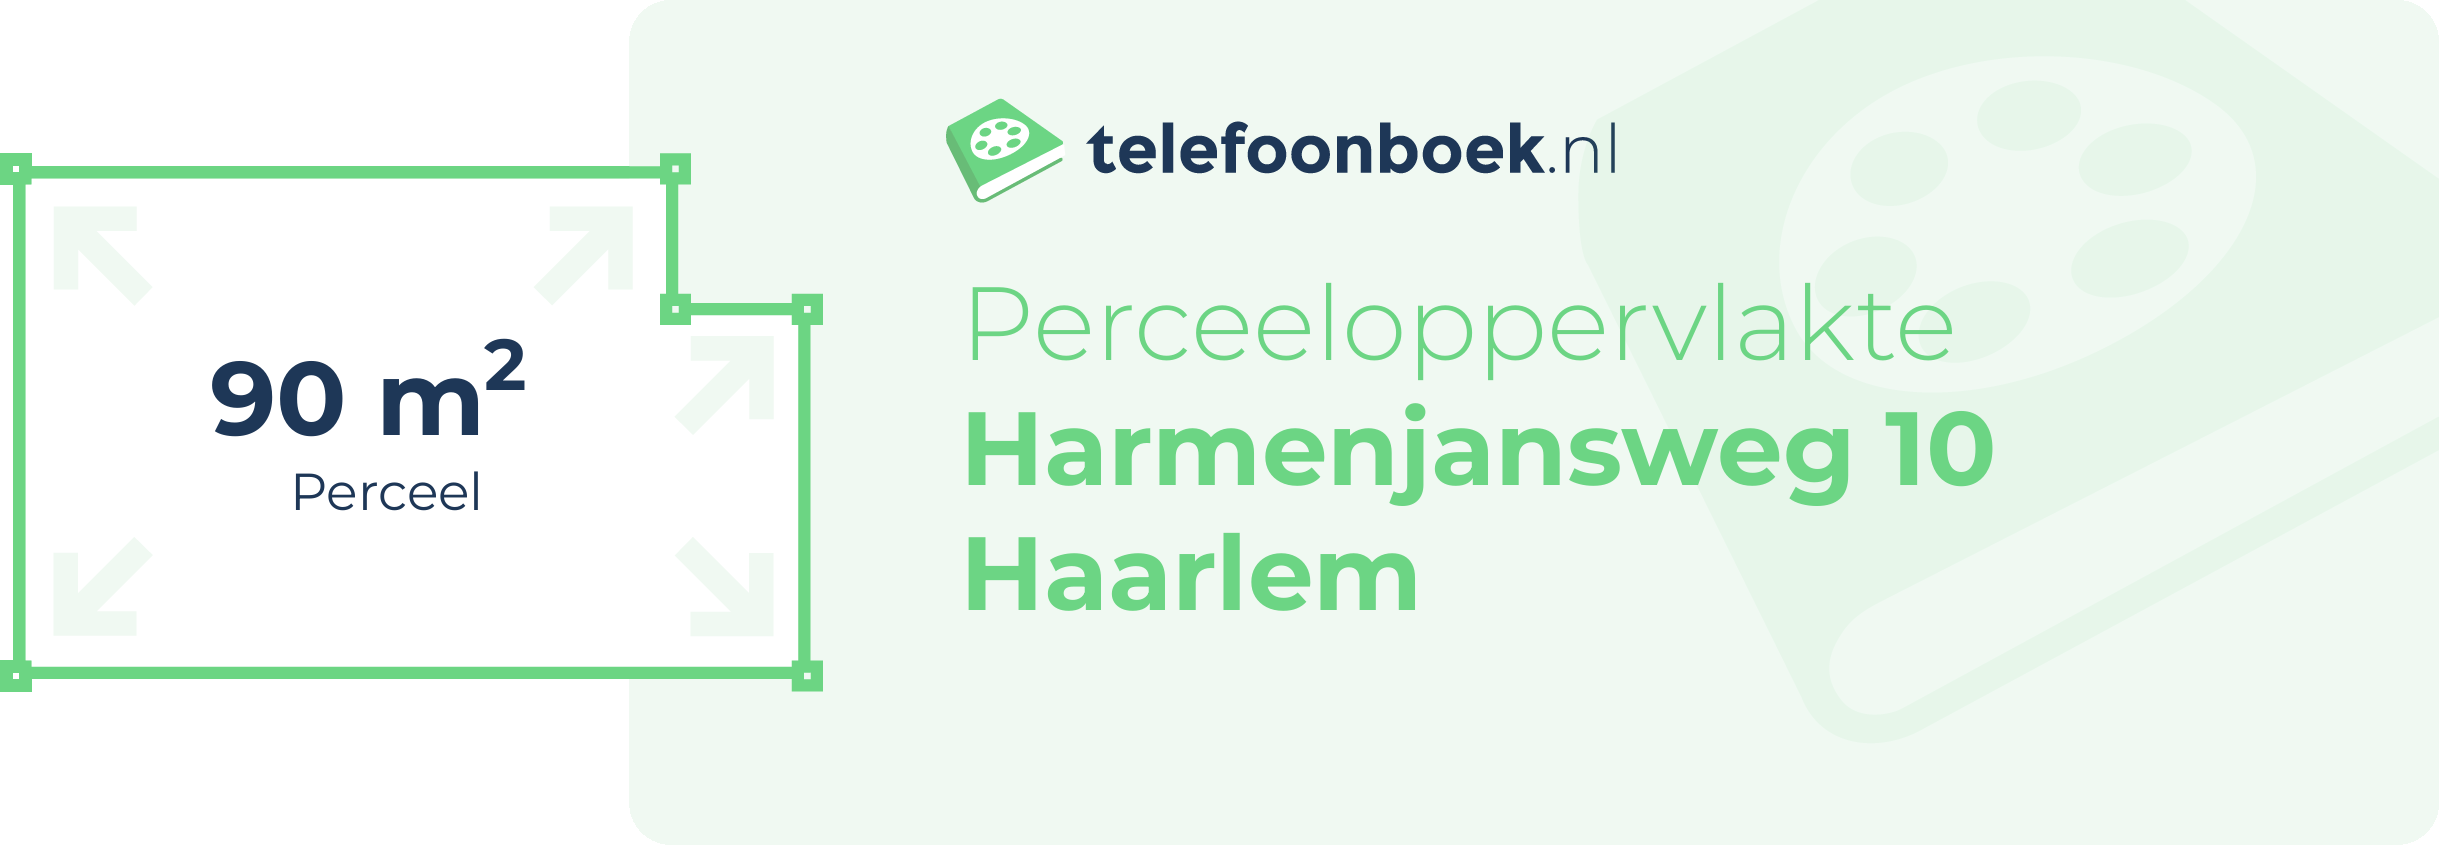 Perceeloppervlakte Harmenjansweg 10 Haarlem